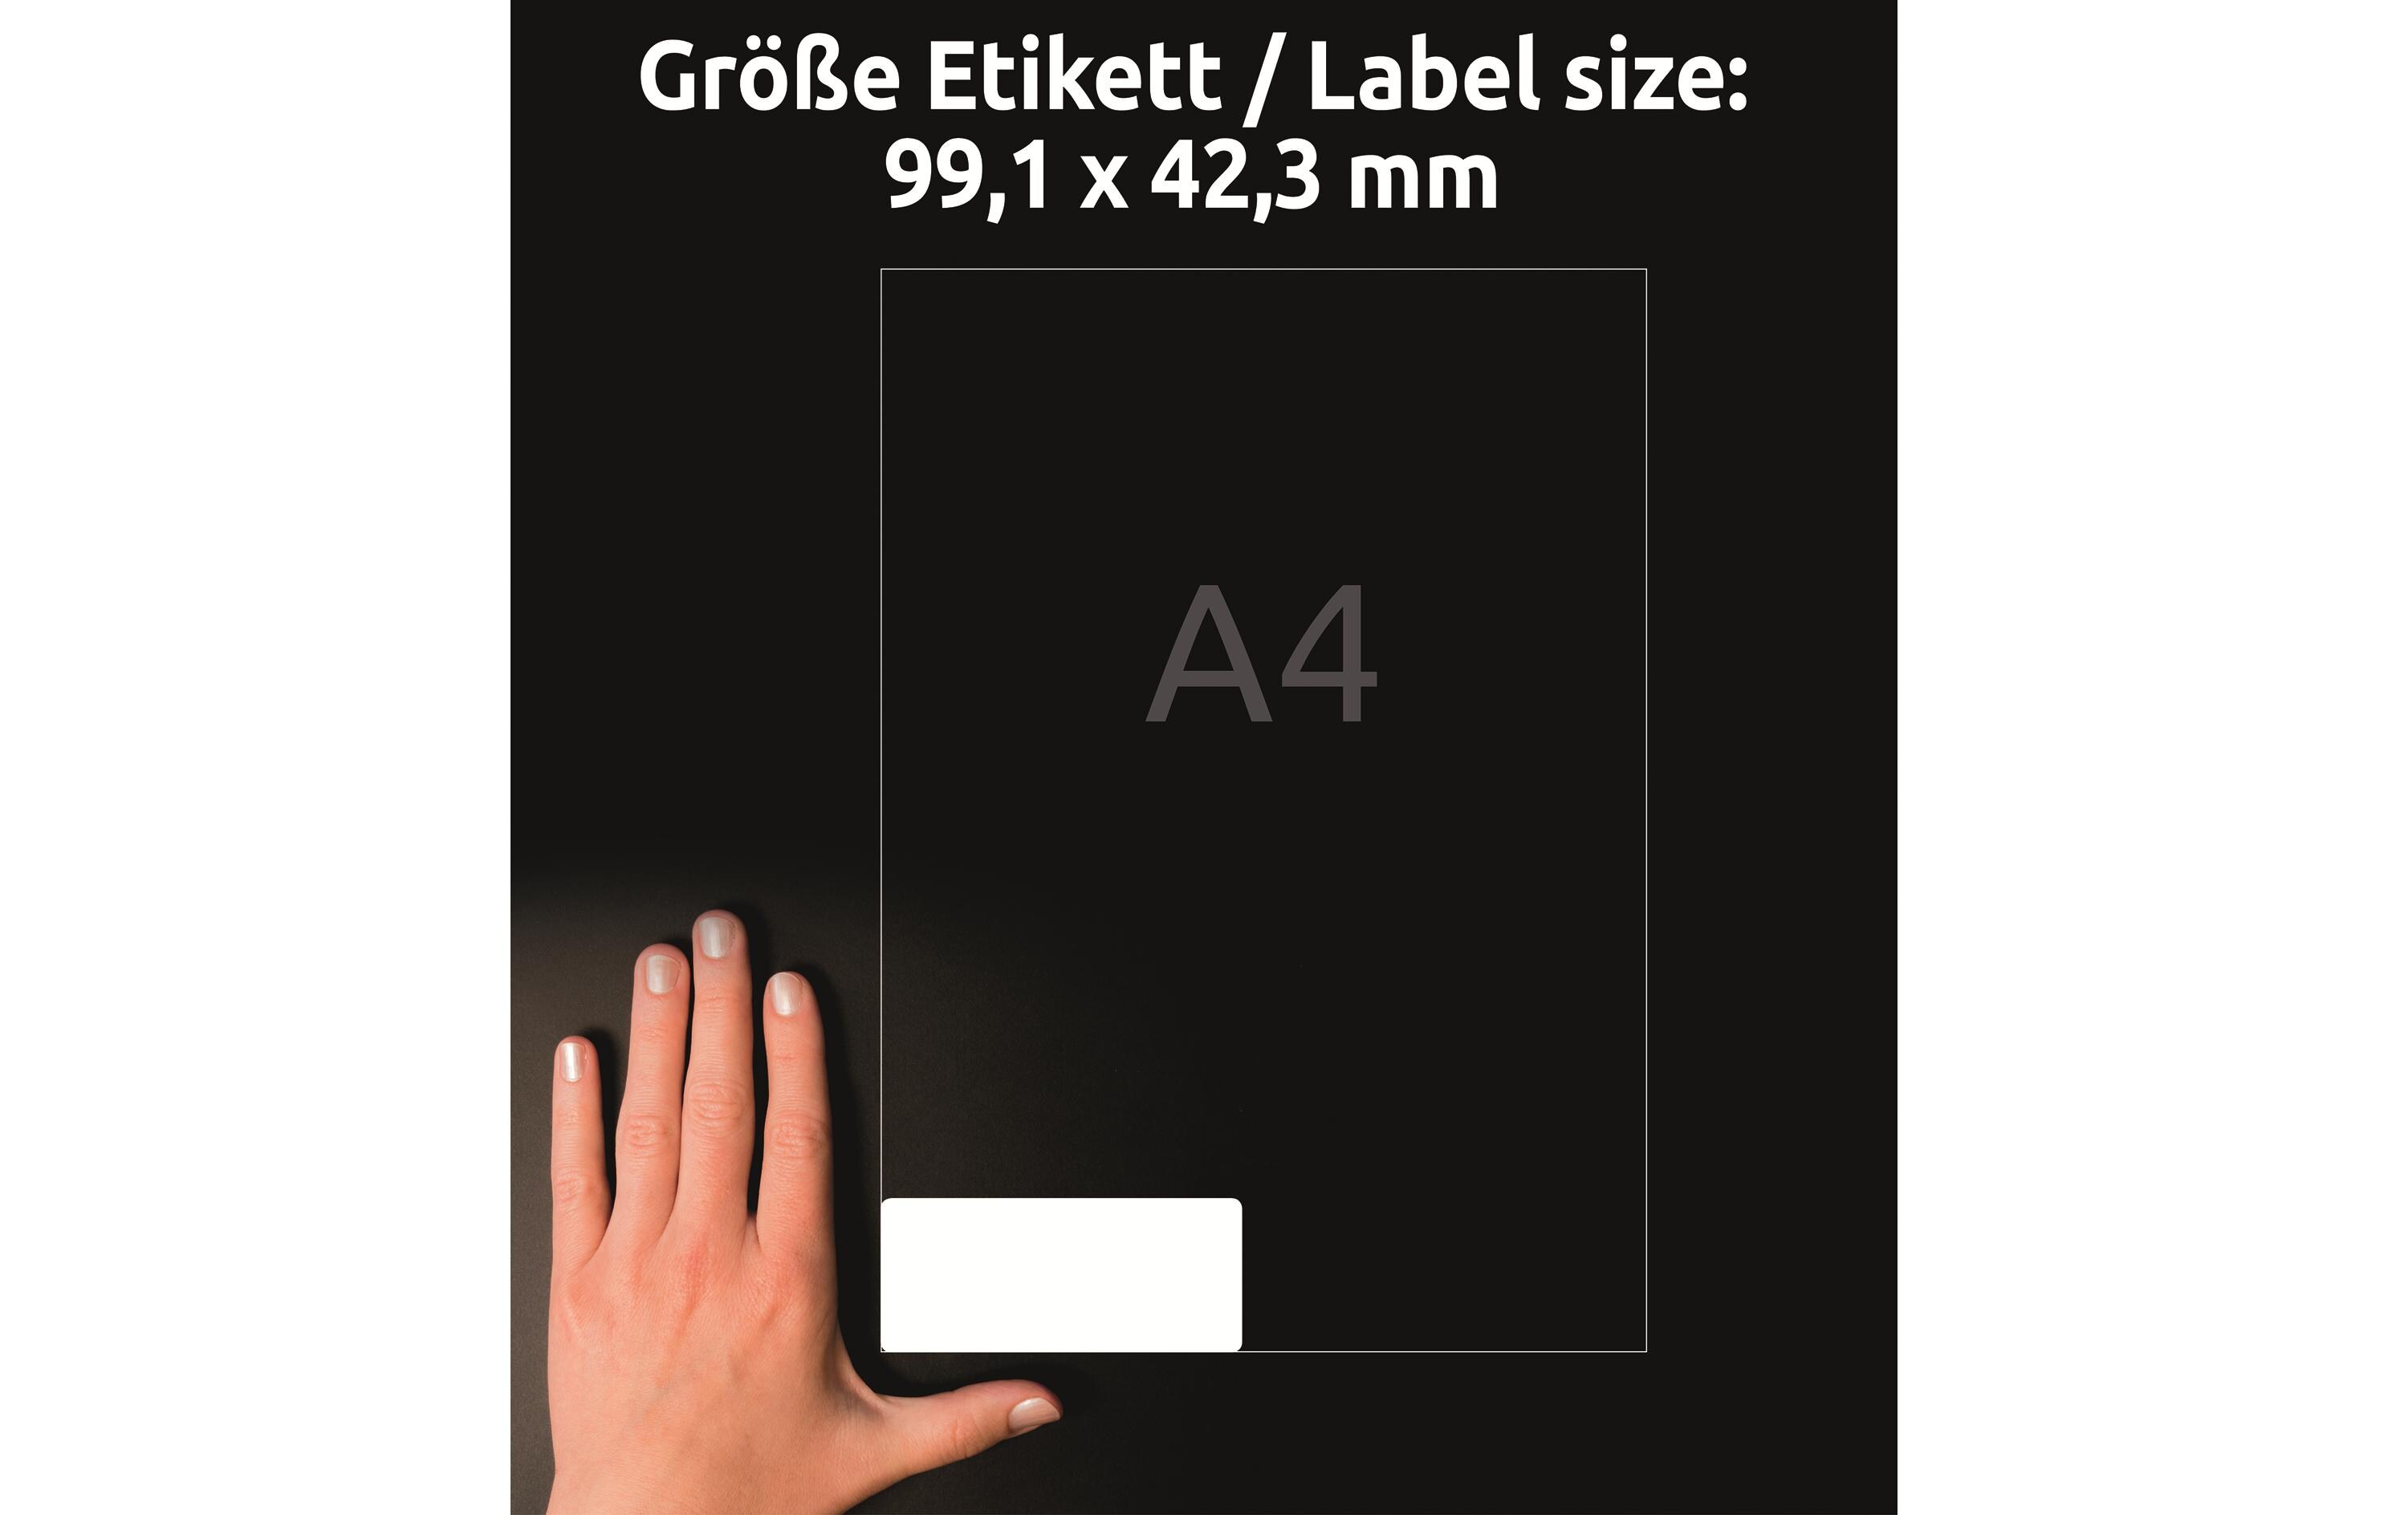 Avery Zweckform Universal-Etiketten Stick + Lift 99.1 mm, 30 Blatt